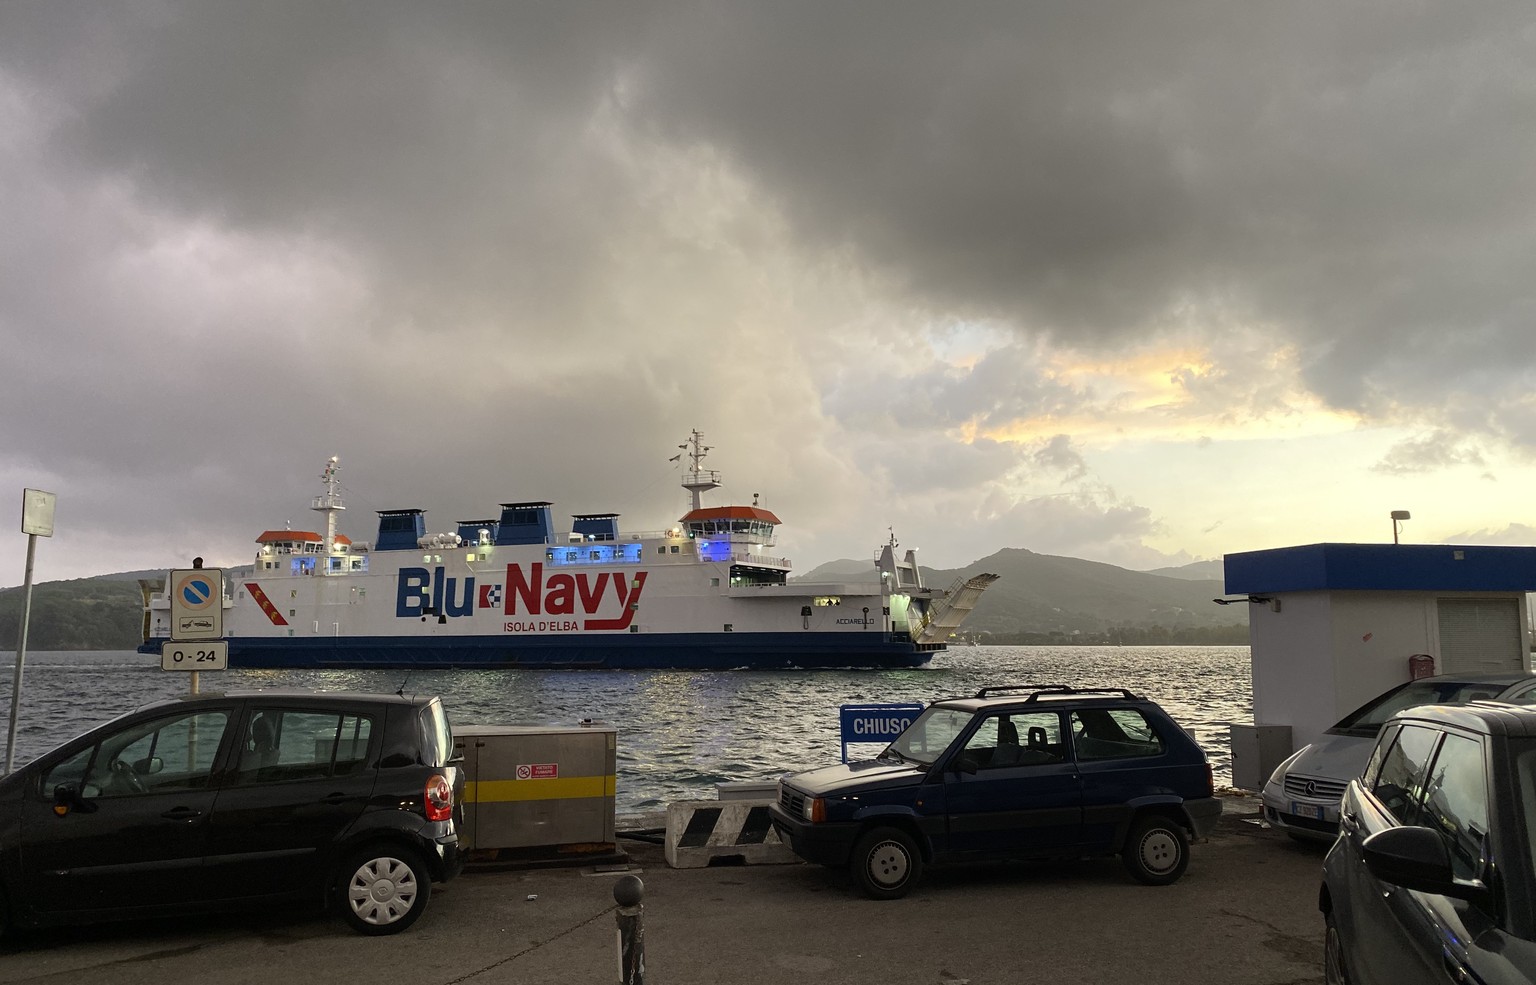 Leider fahren alle Fähren mit stinkenden Dieselmotoren, ob Toremar, Moby Lines, Corsica Ferries oder Blu Navy. Die Überfahrt von Piombino (Toscana) dauert nur eine gute Stunde.